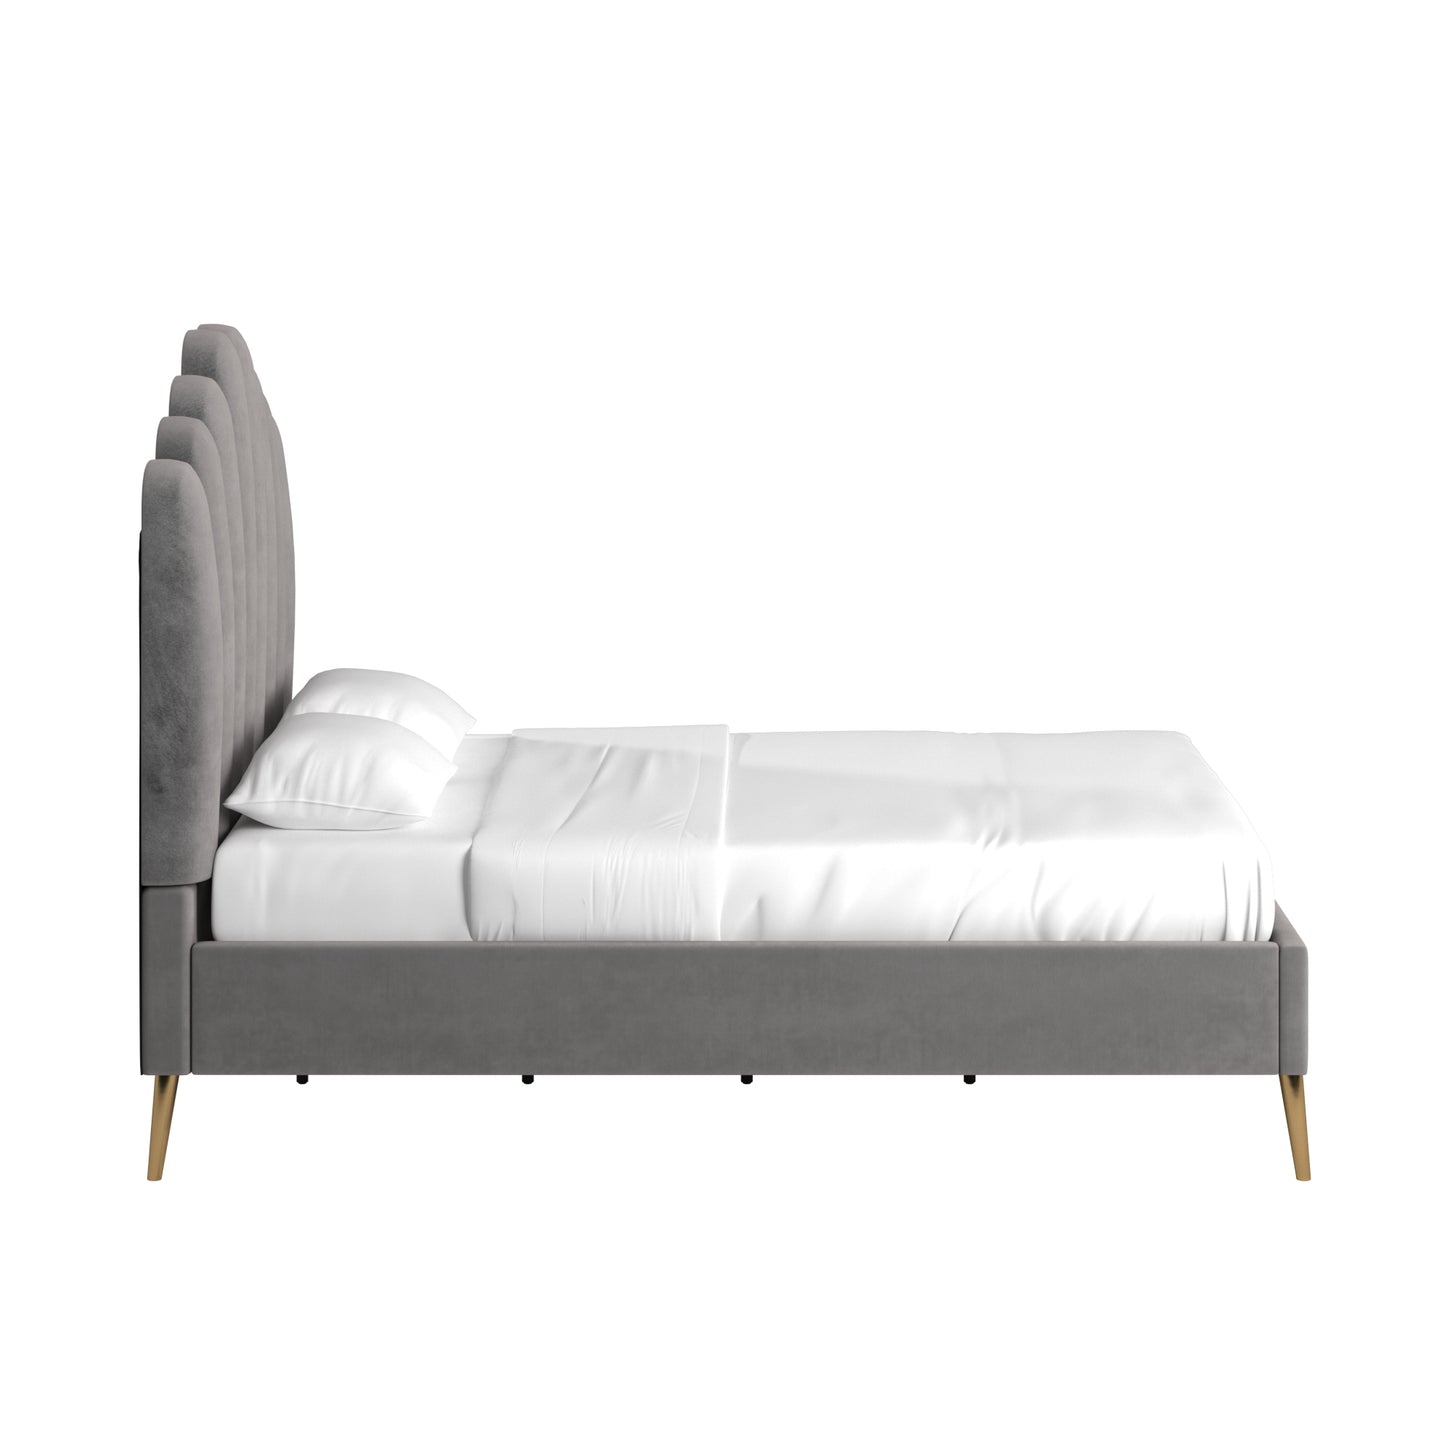 Art Deco Velvet Upholstered Platform Bed - Grey, Full